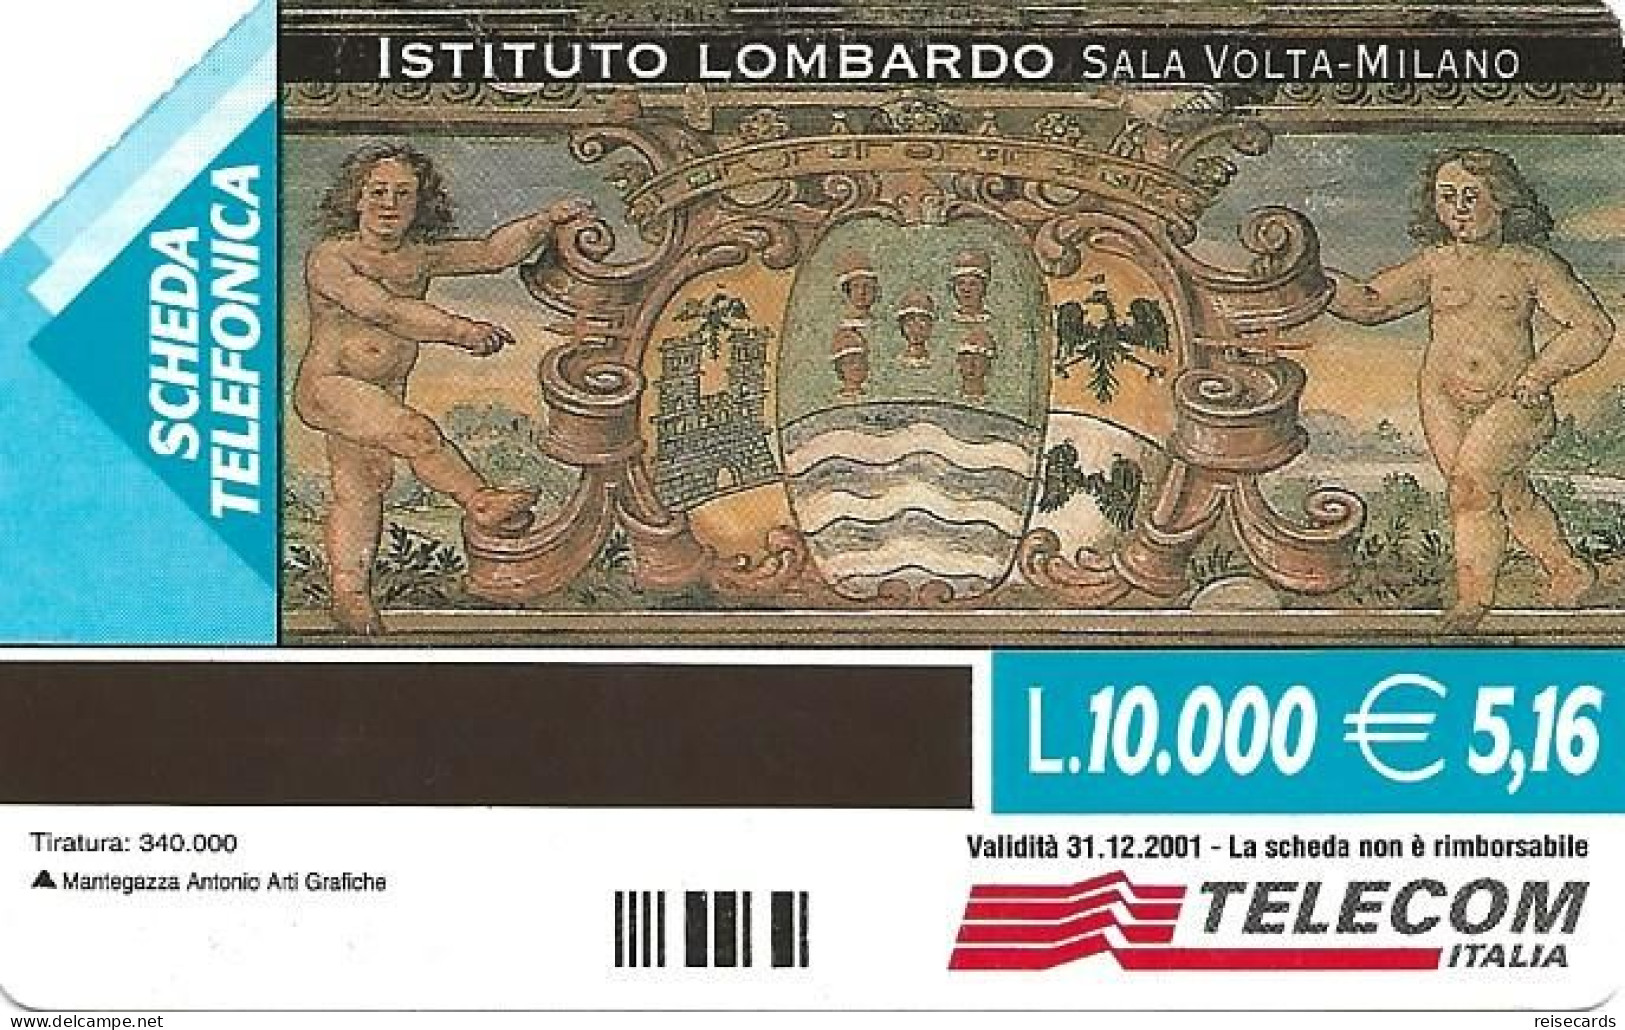 Italy: Telecom Italia - Istituto Lombardo, Particolare Del Monoscritto Di Volta - Public Advertising